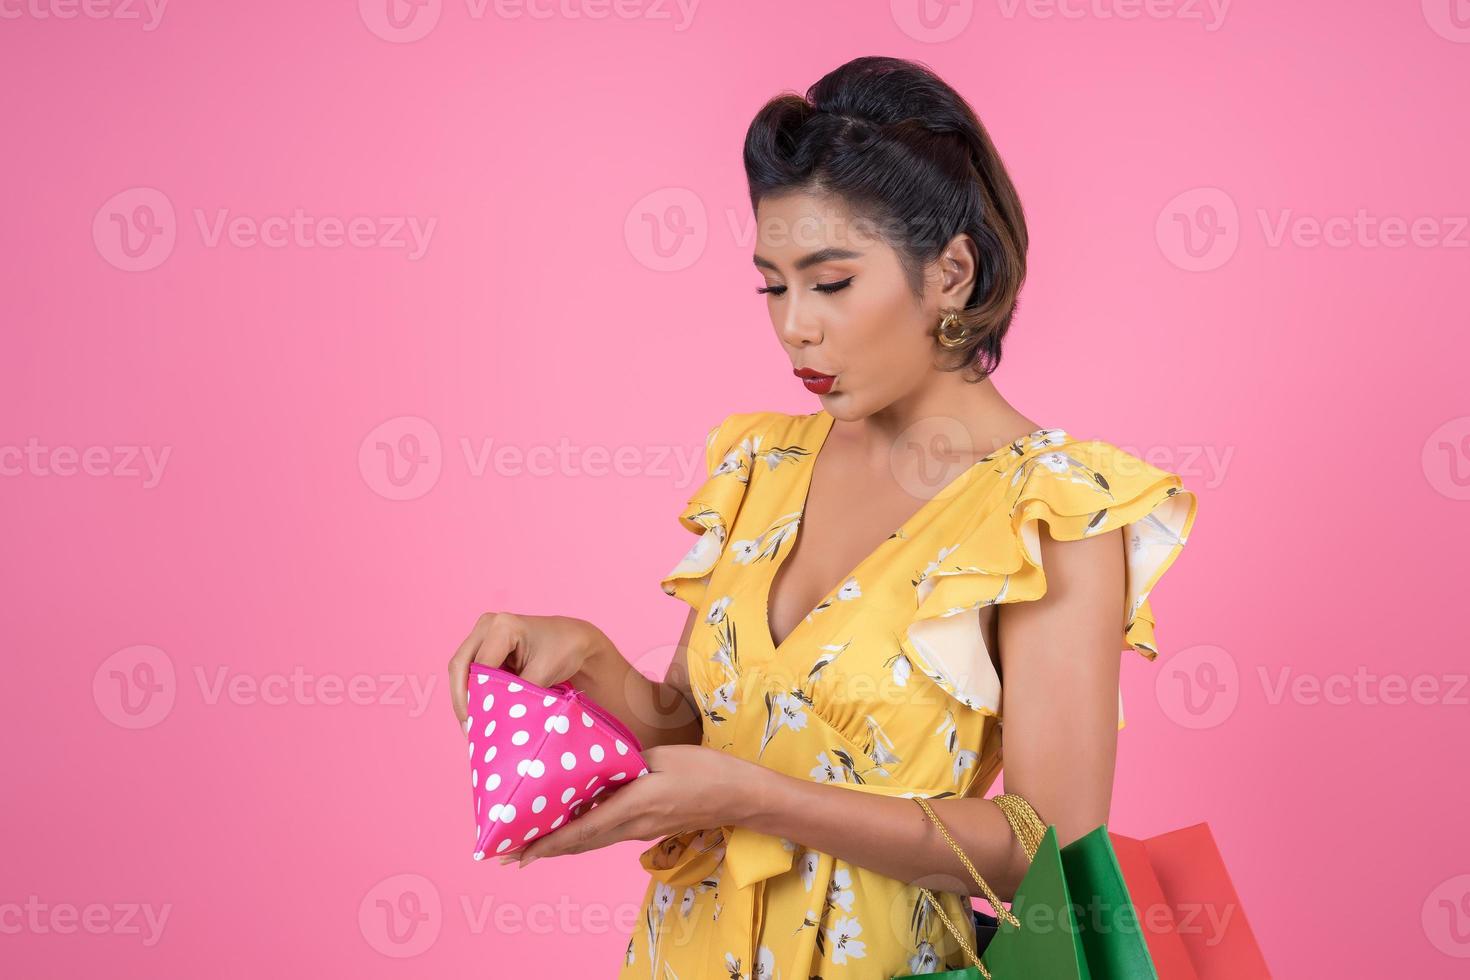 jovem elegante segurando uma carteira com dinheiro e sacolas de compras foto